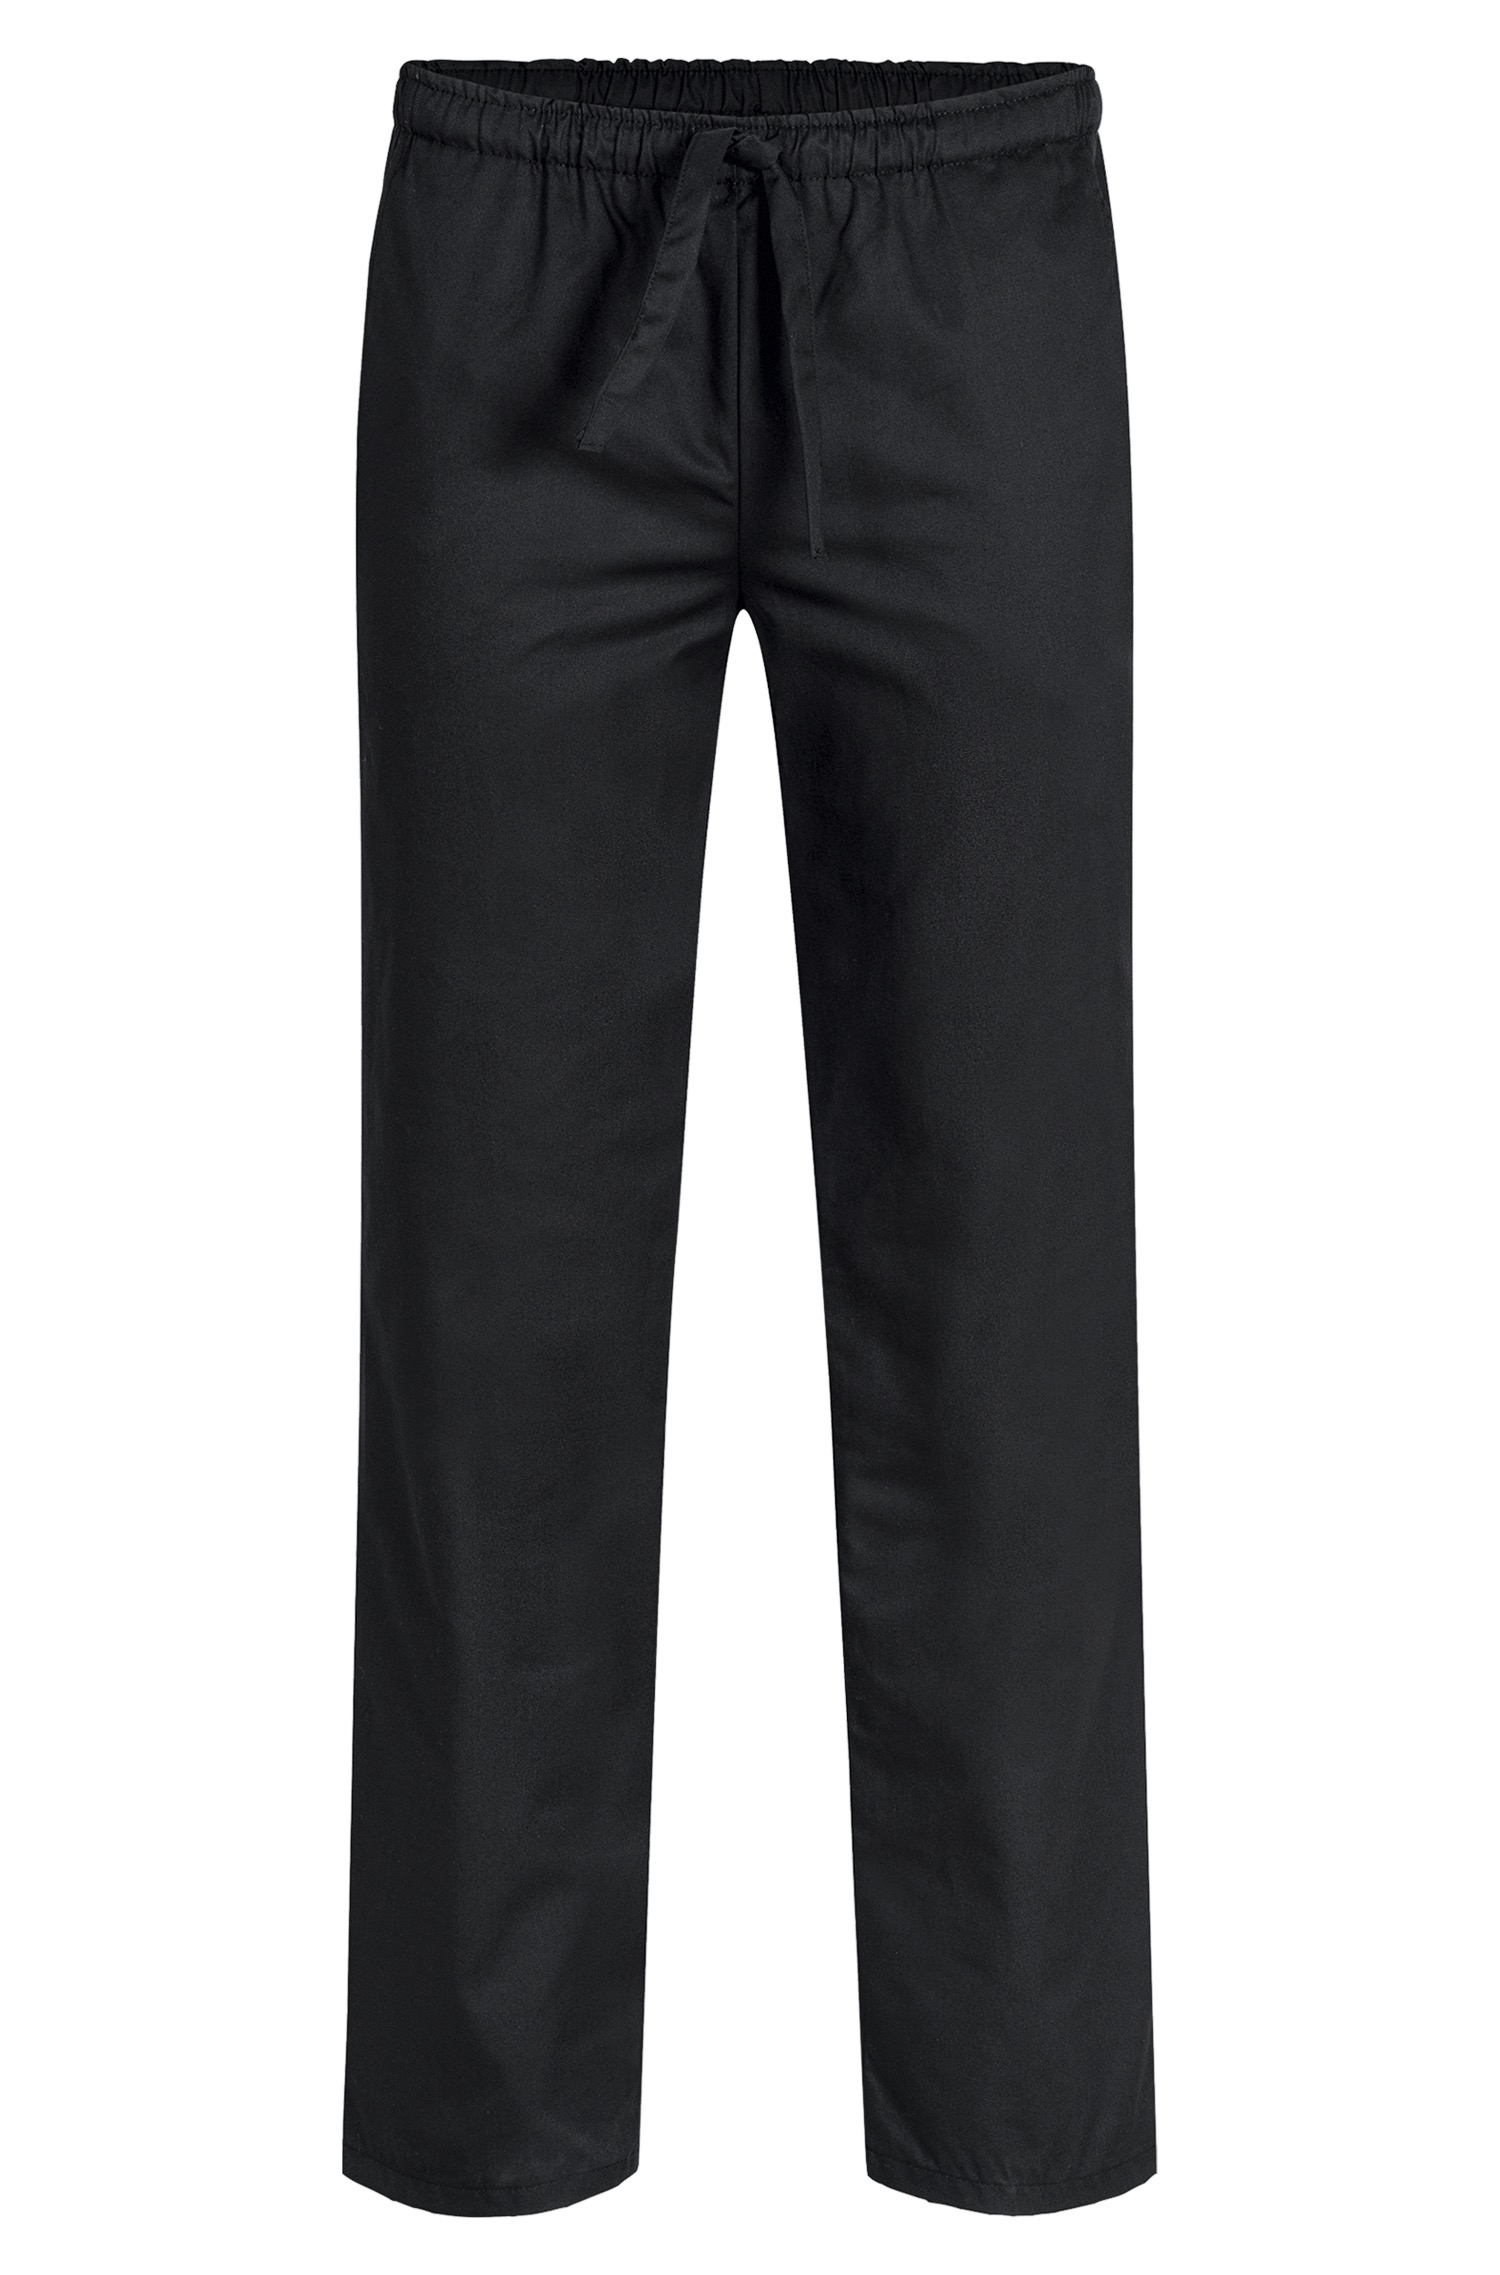 Men's slip-on pants RF 2100 Greiff® Black S